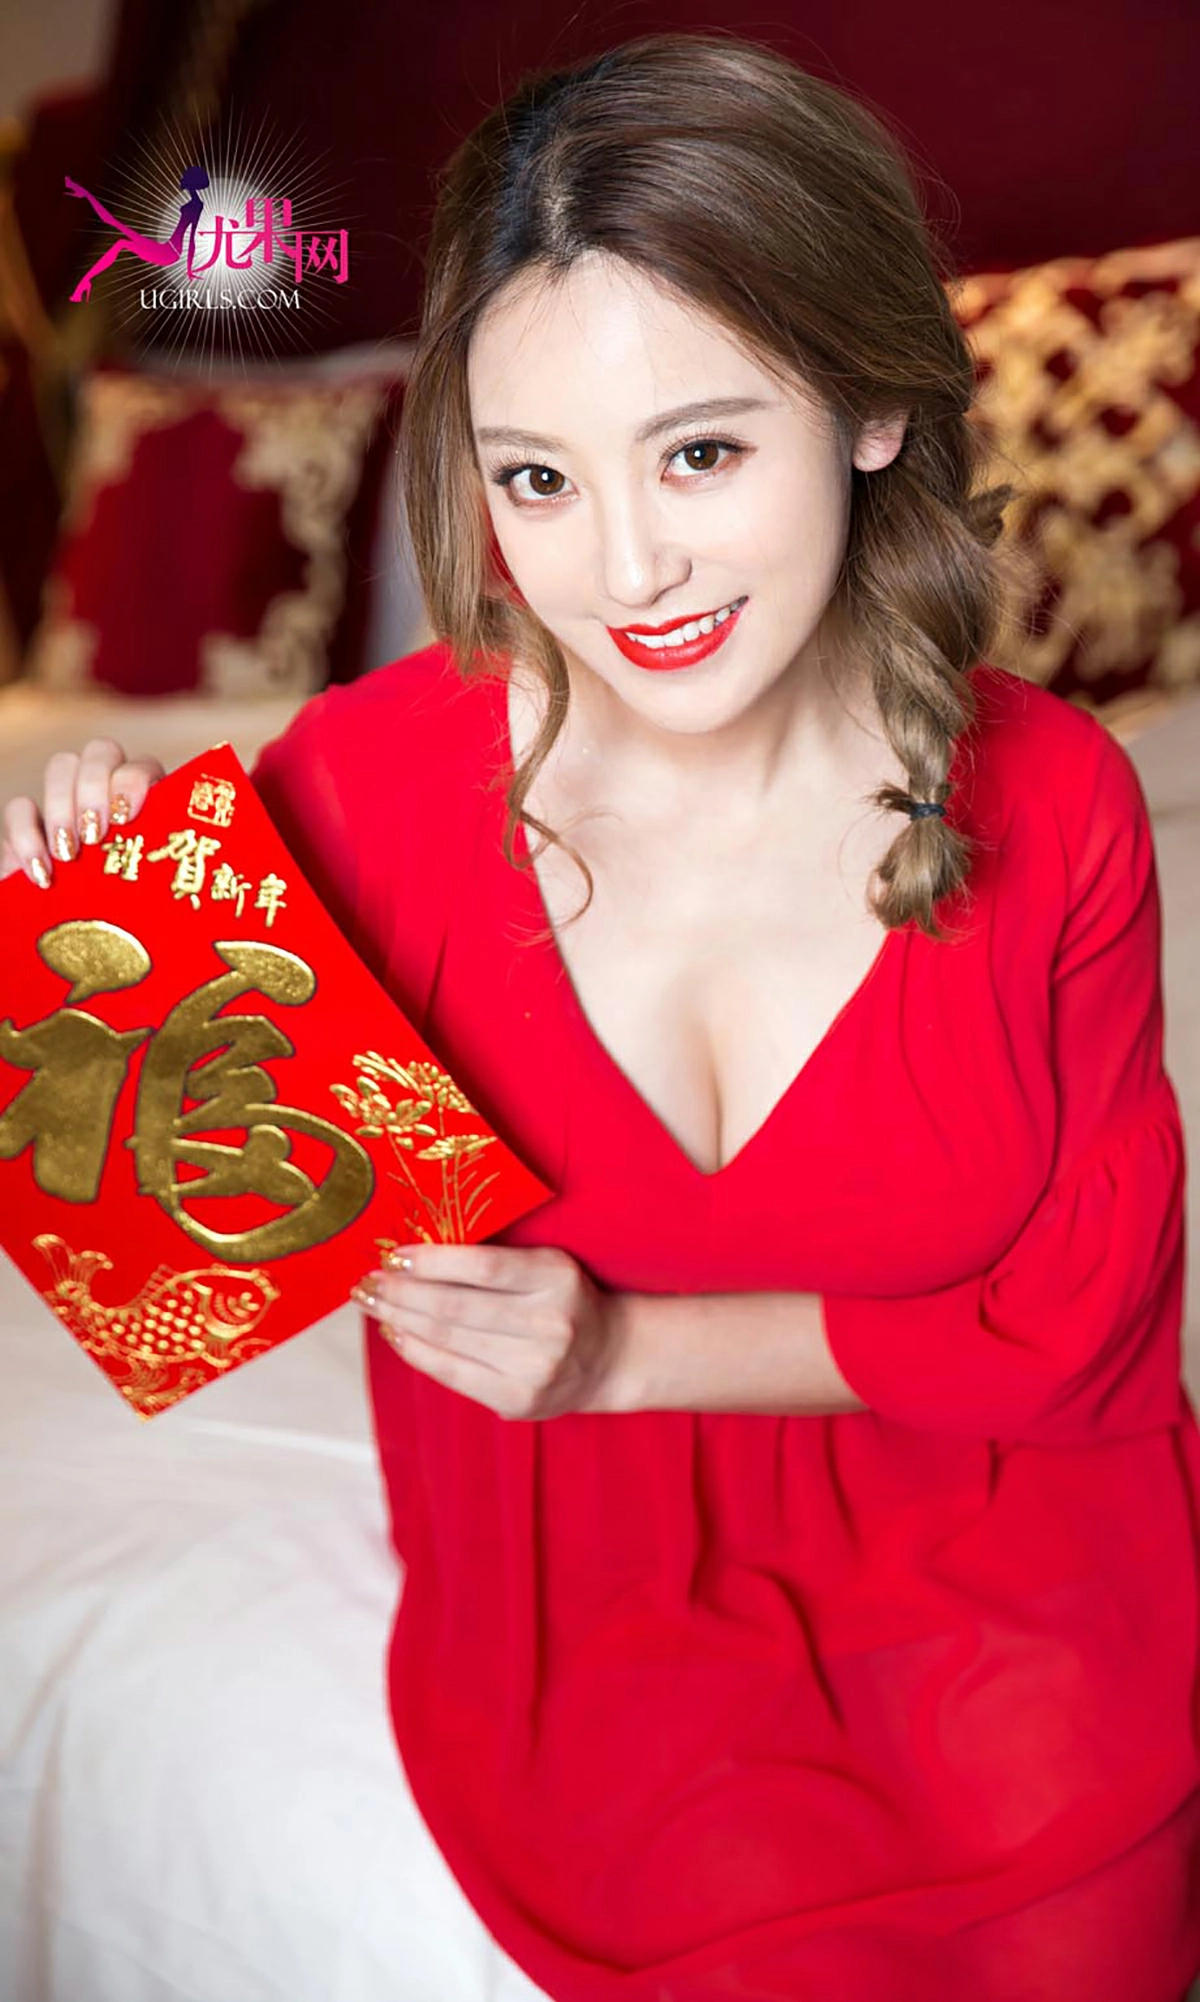 [爱尤物]NO.265 美人闹新年 何曼丽&张鑫 红色睡衣与情趣肚兜性感私房写真集,4690